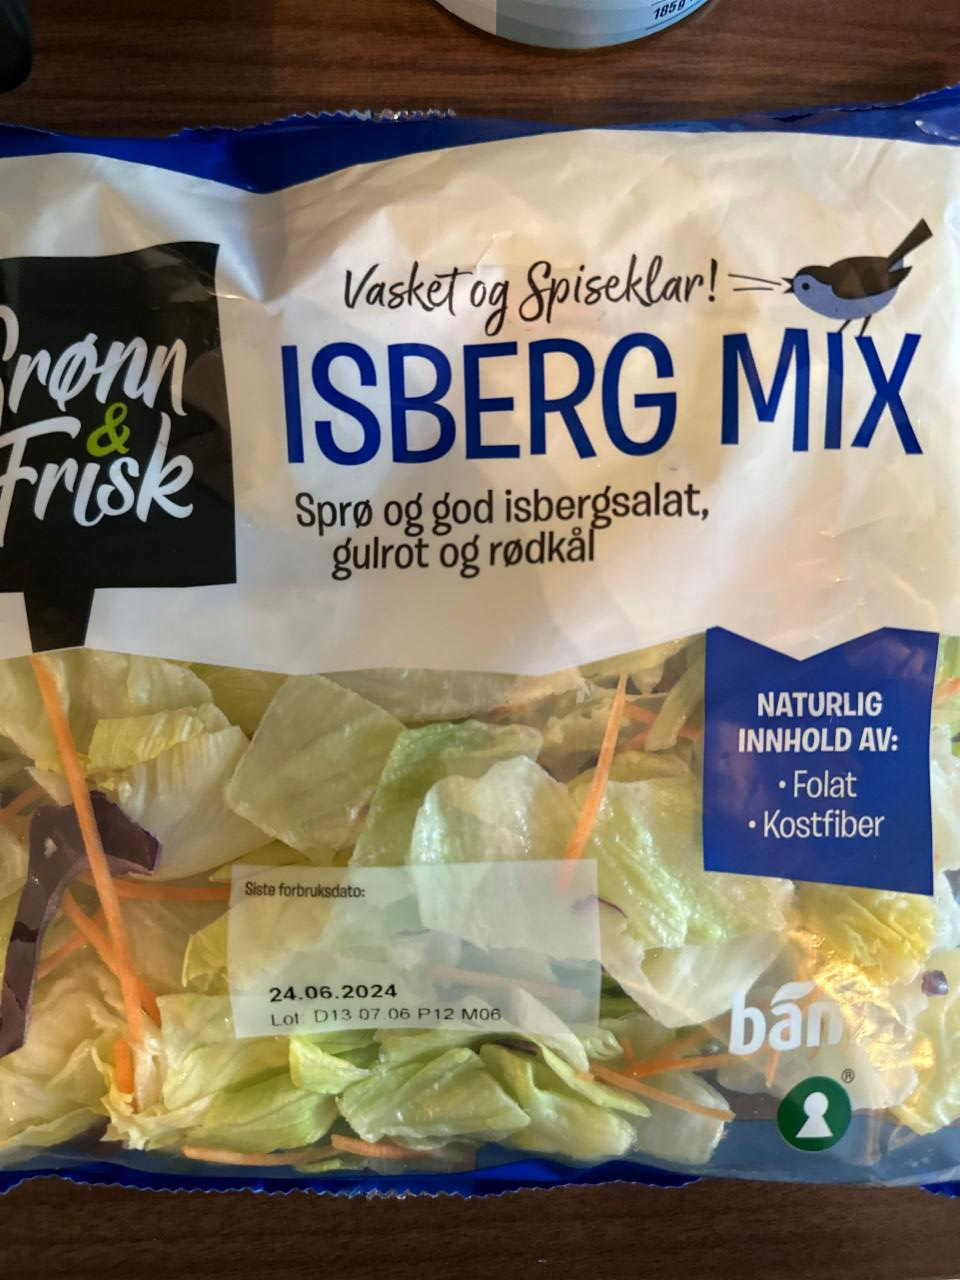 Fotografie - Isberg Mix Gronn & Frisk